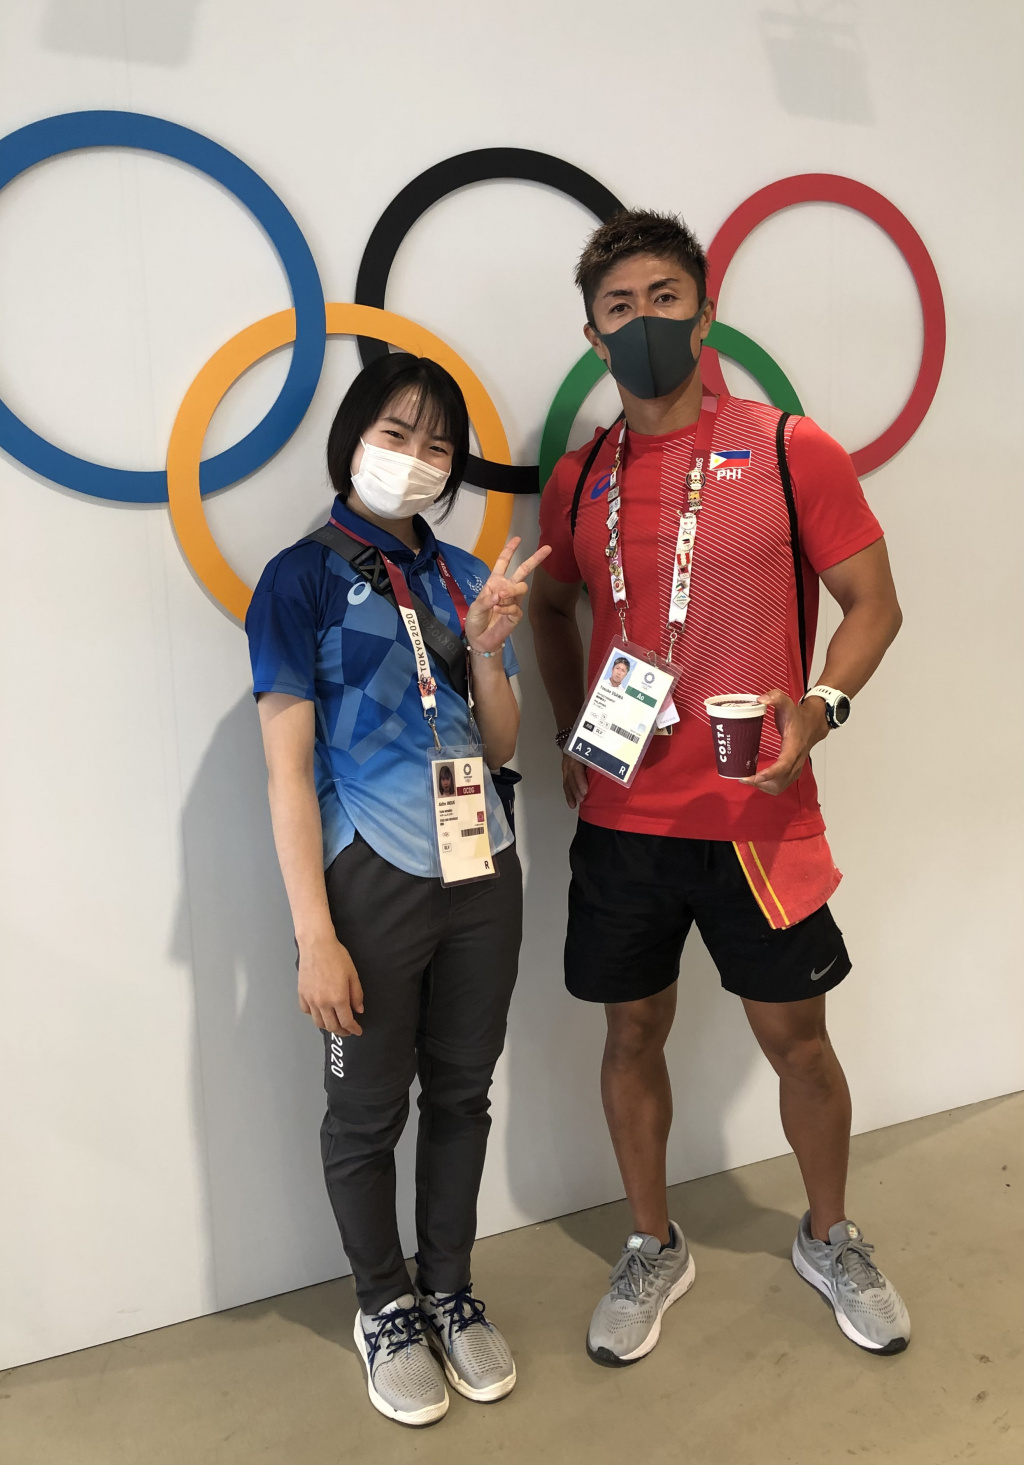 選手村で偶然会った文学部の江川陽介教授（右）と。江川教授はフィリピン選手団柔道チーム専属トレーナーとして選手村に滞在していた